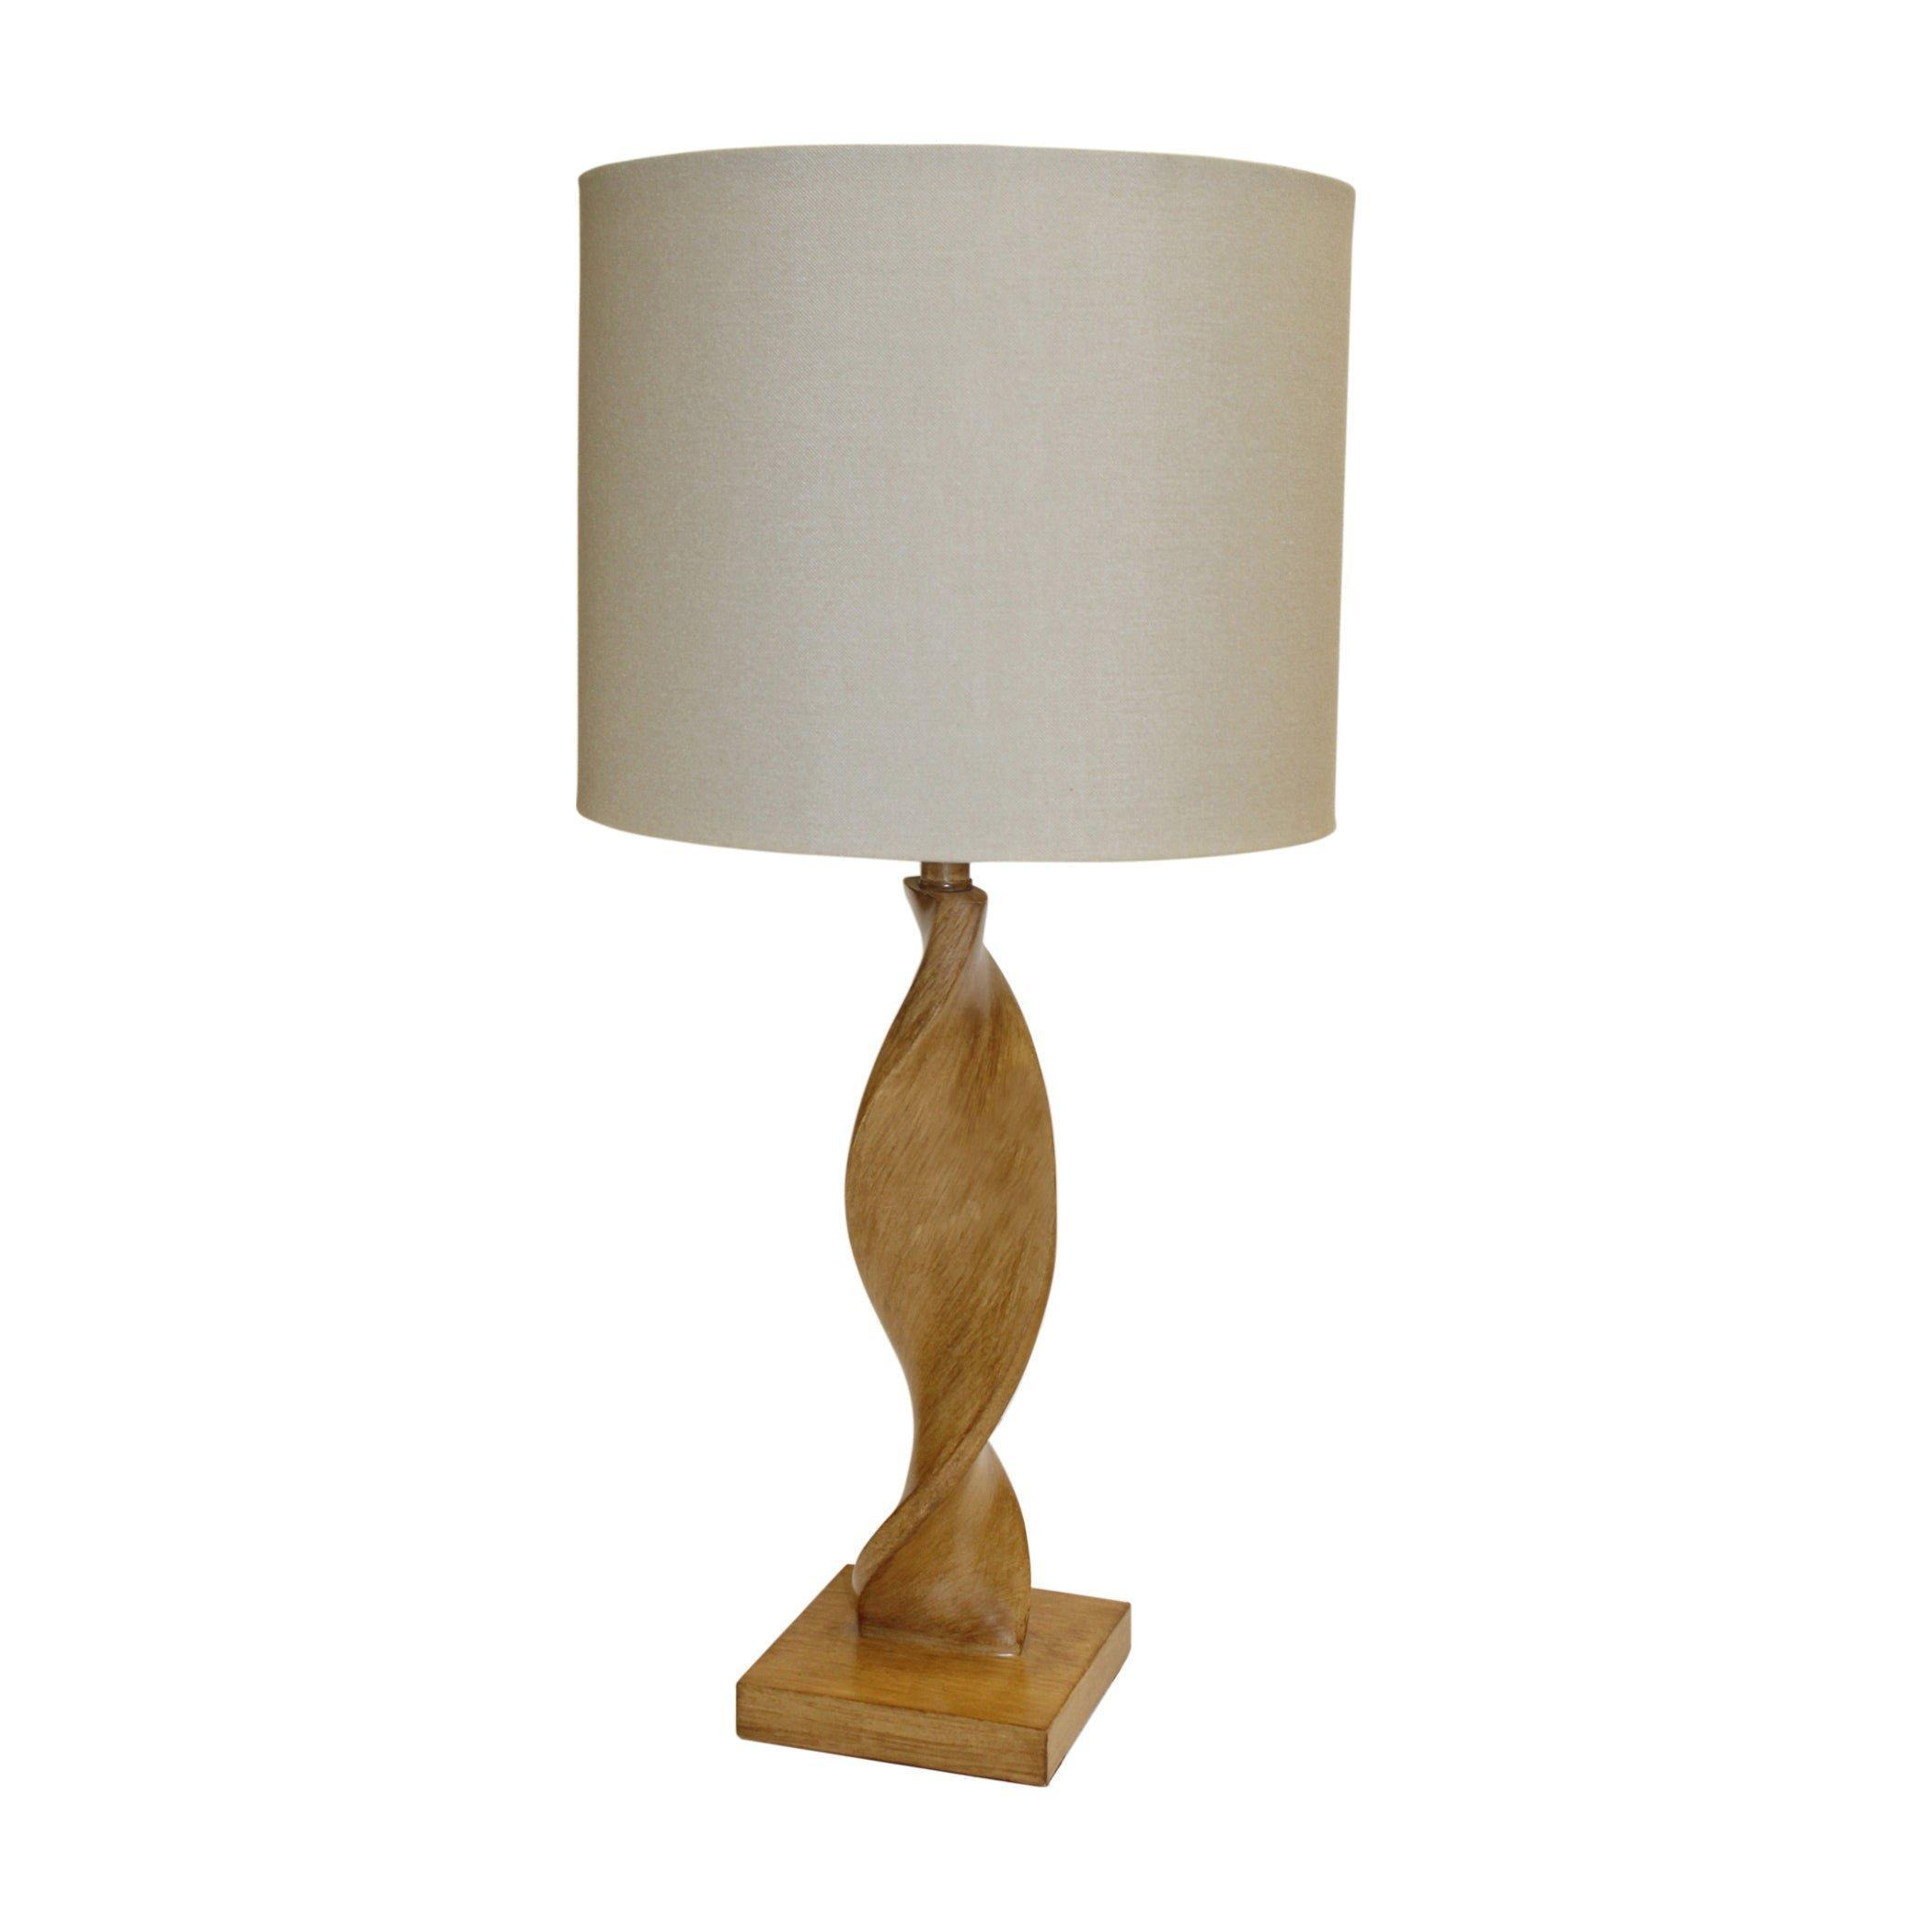 Table Lamp Oak Effect Resin & Natural Linen 10W LED E27 Base & Shade - image 1